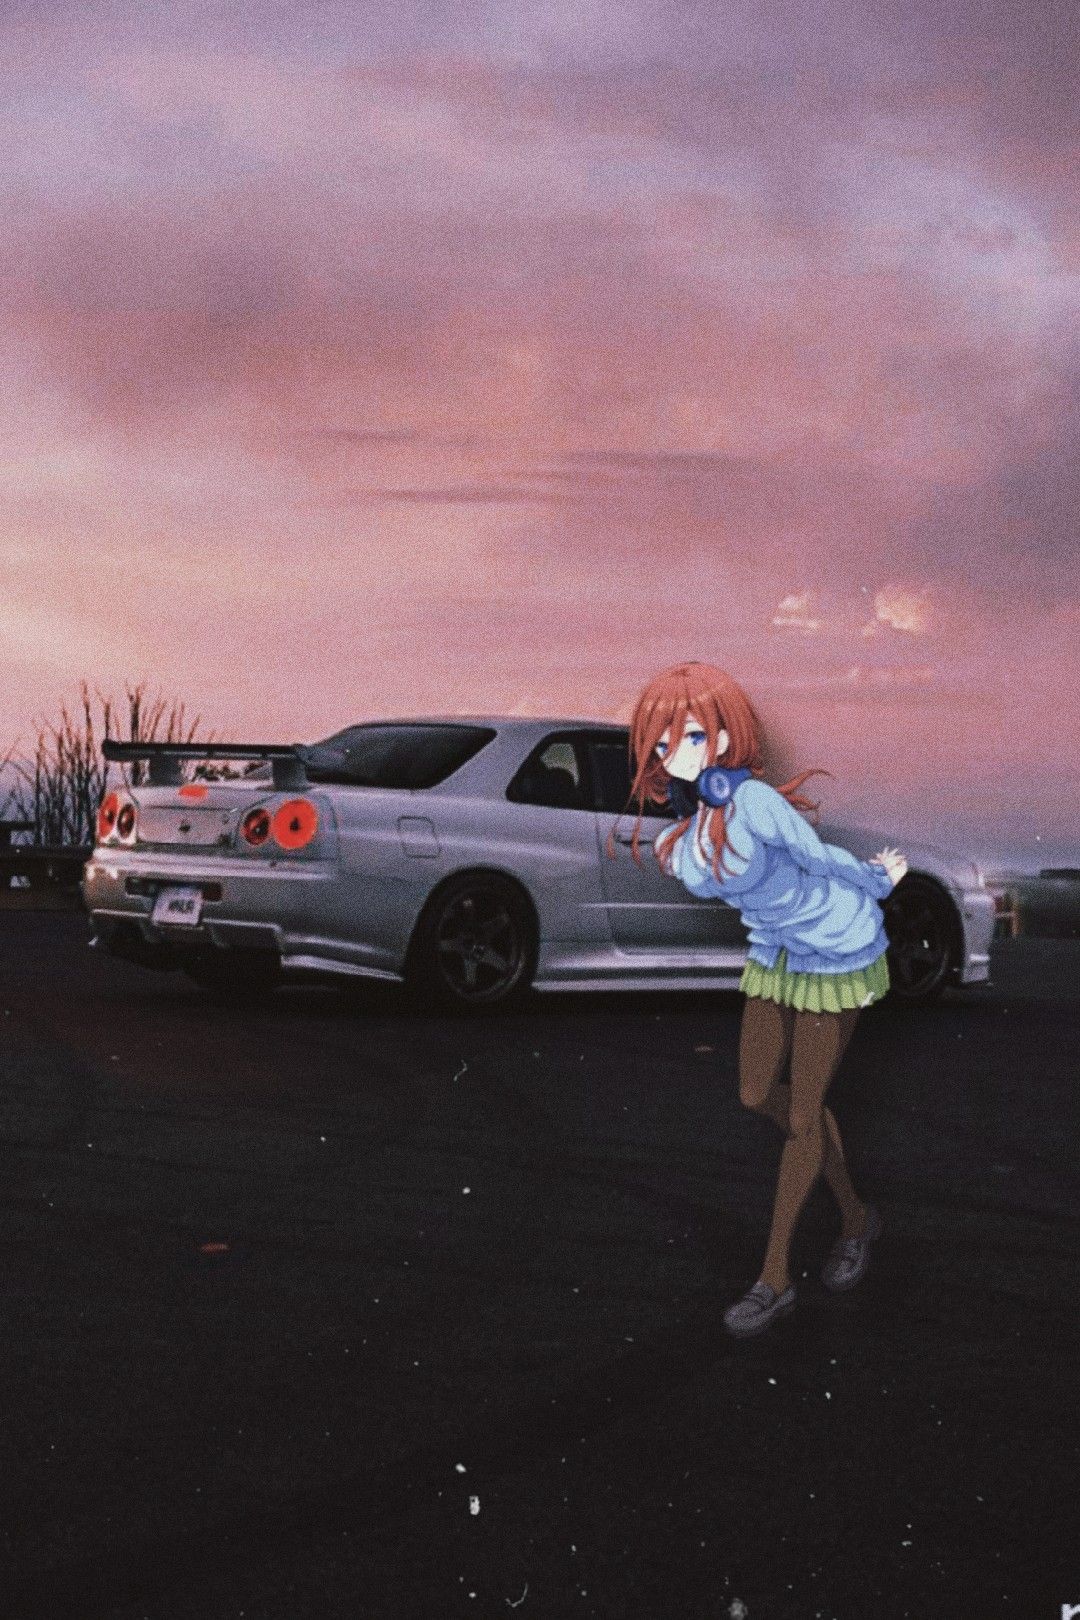 Anime Car Images  Free Download on Freepik